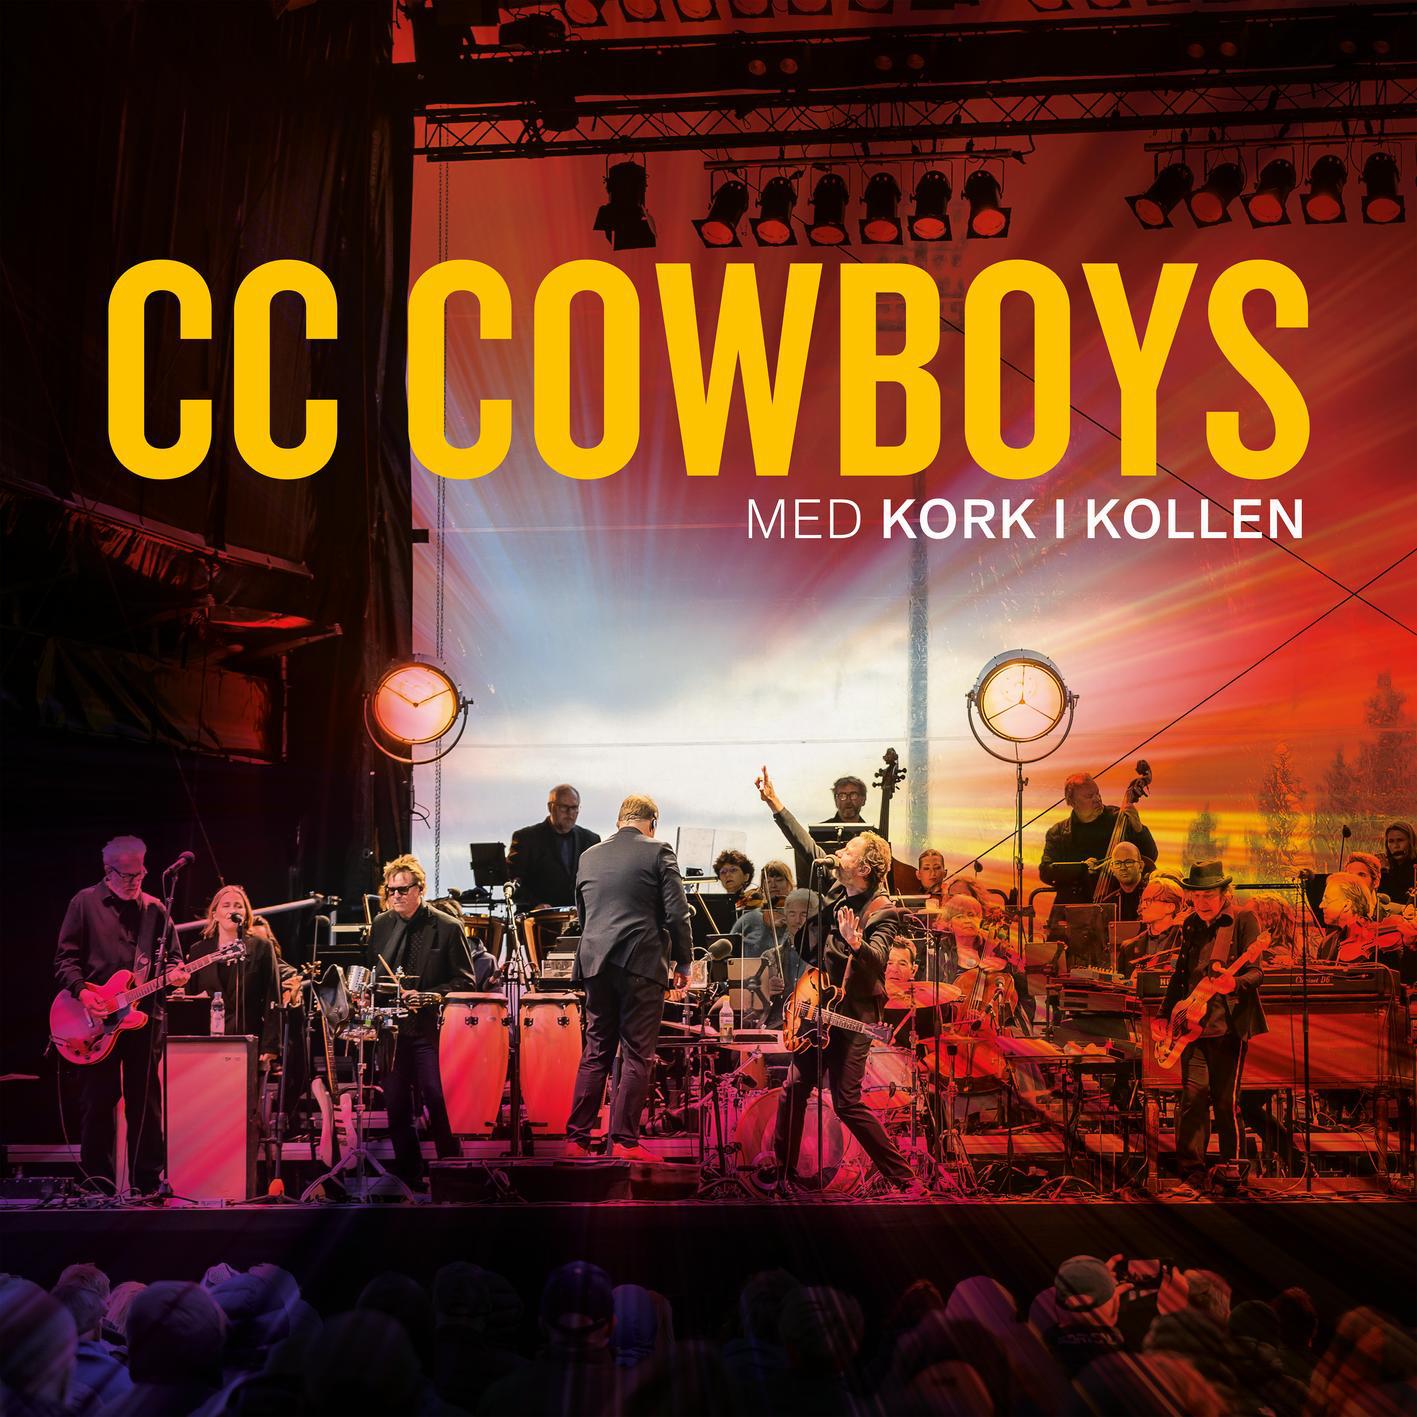 CC Cowboys - Synder i sommersol